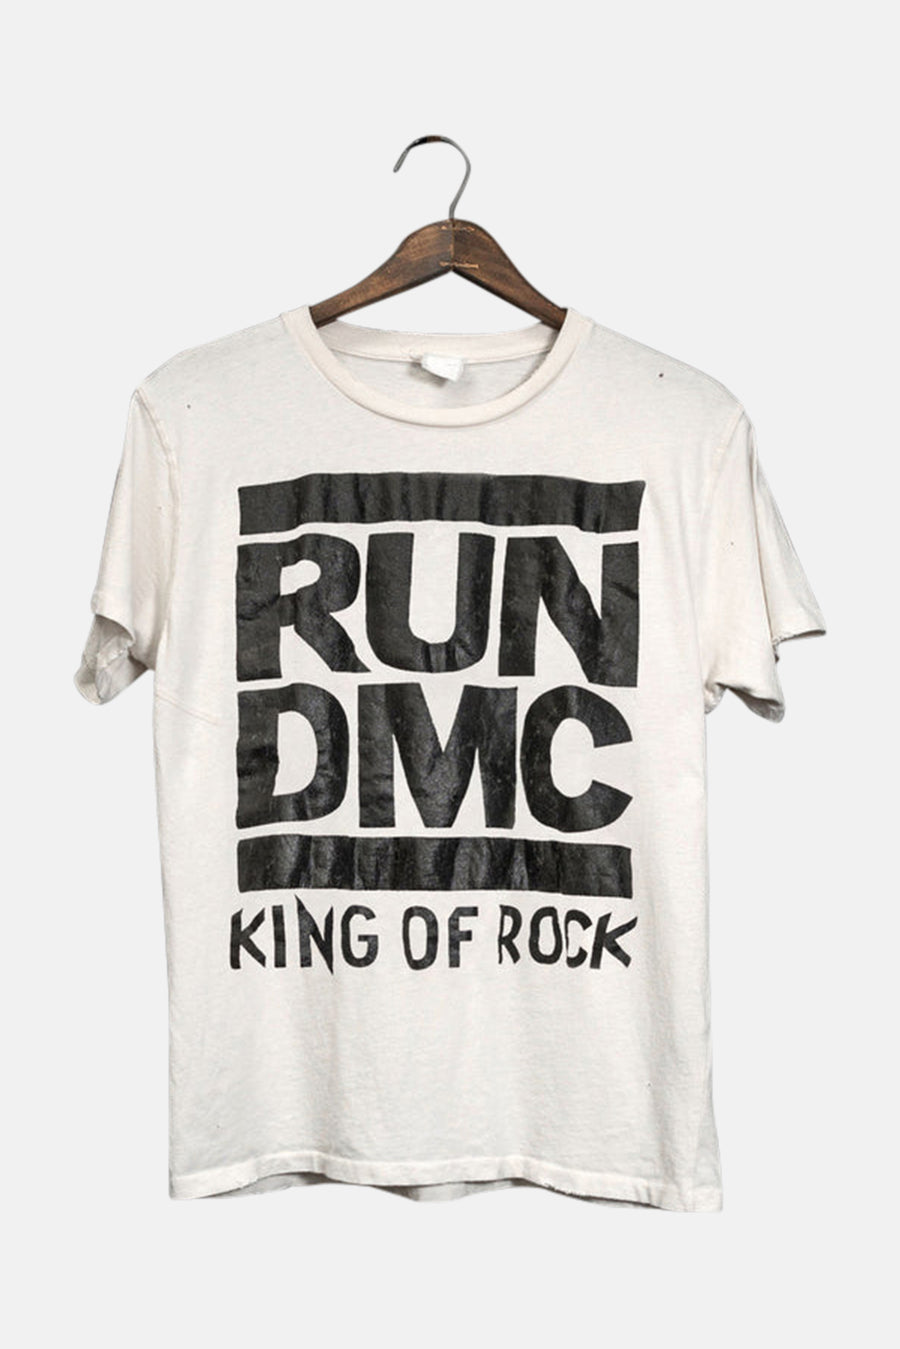 Run DMC King Of Rock Tee Vintage White